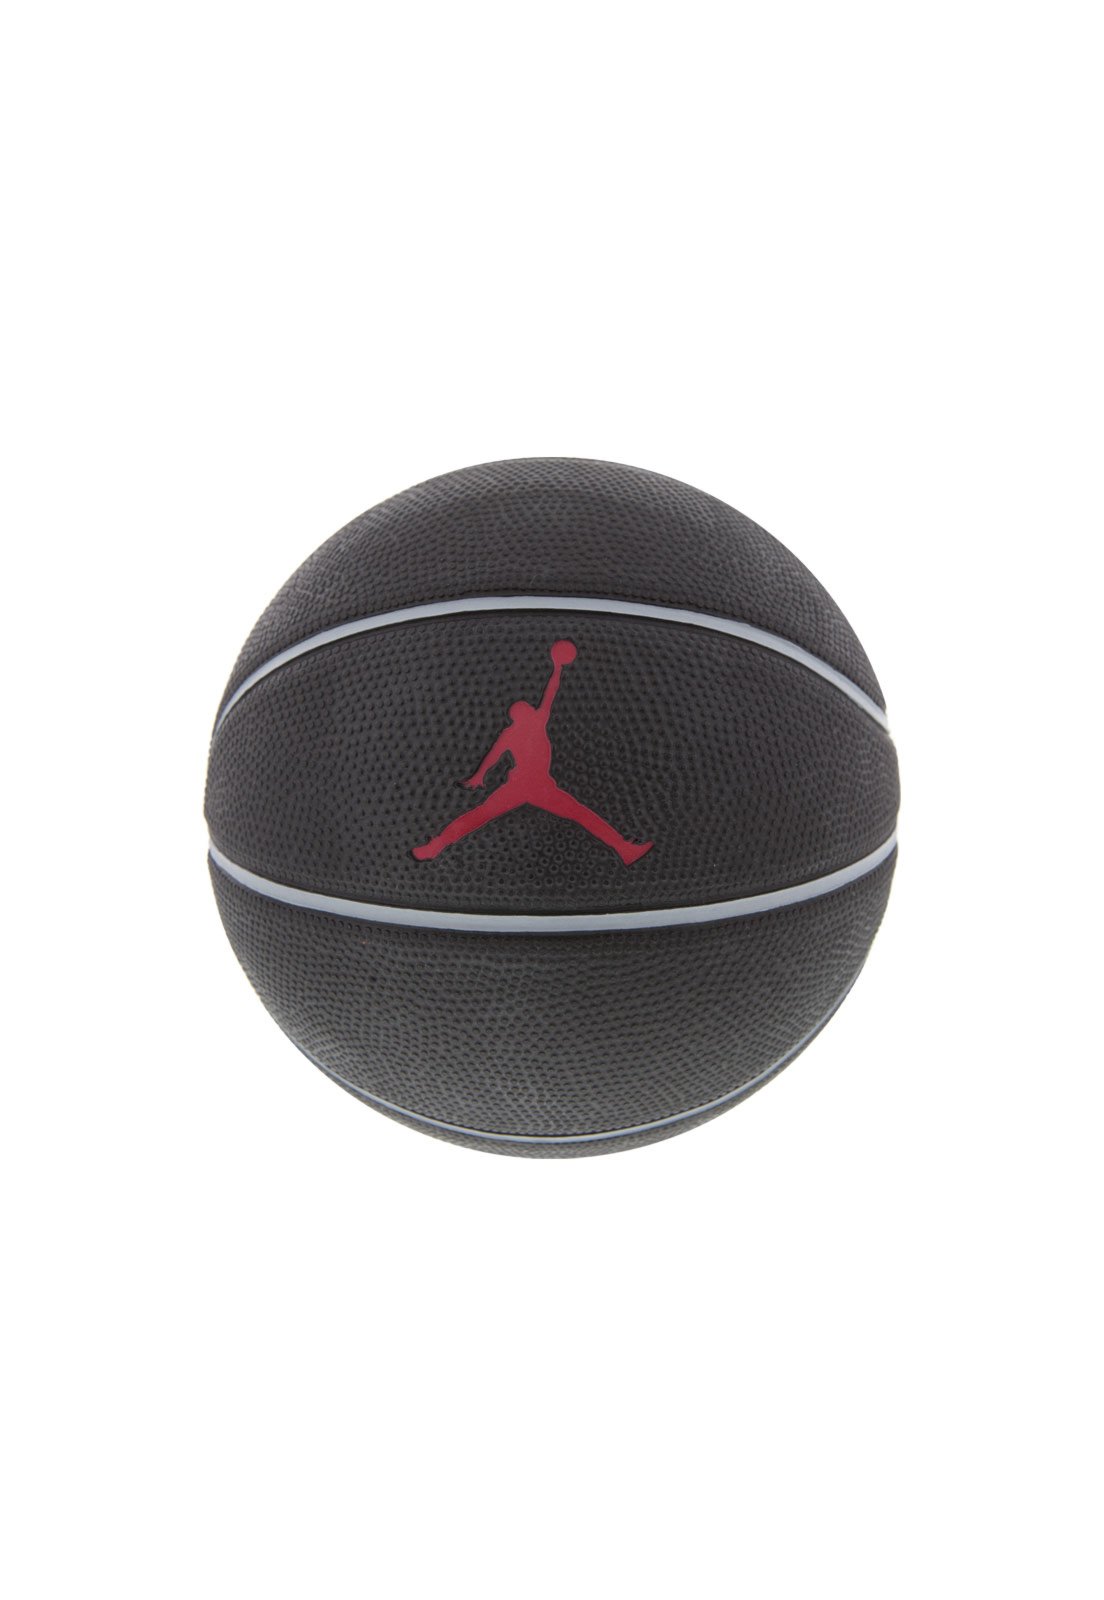 Bola Basquete Nike Jordan Mini Preta - Compre Agora